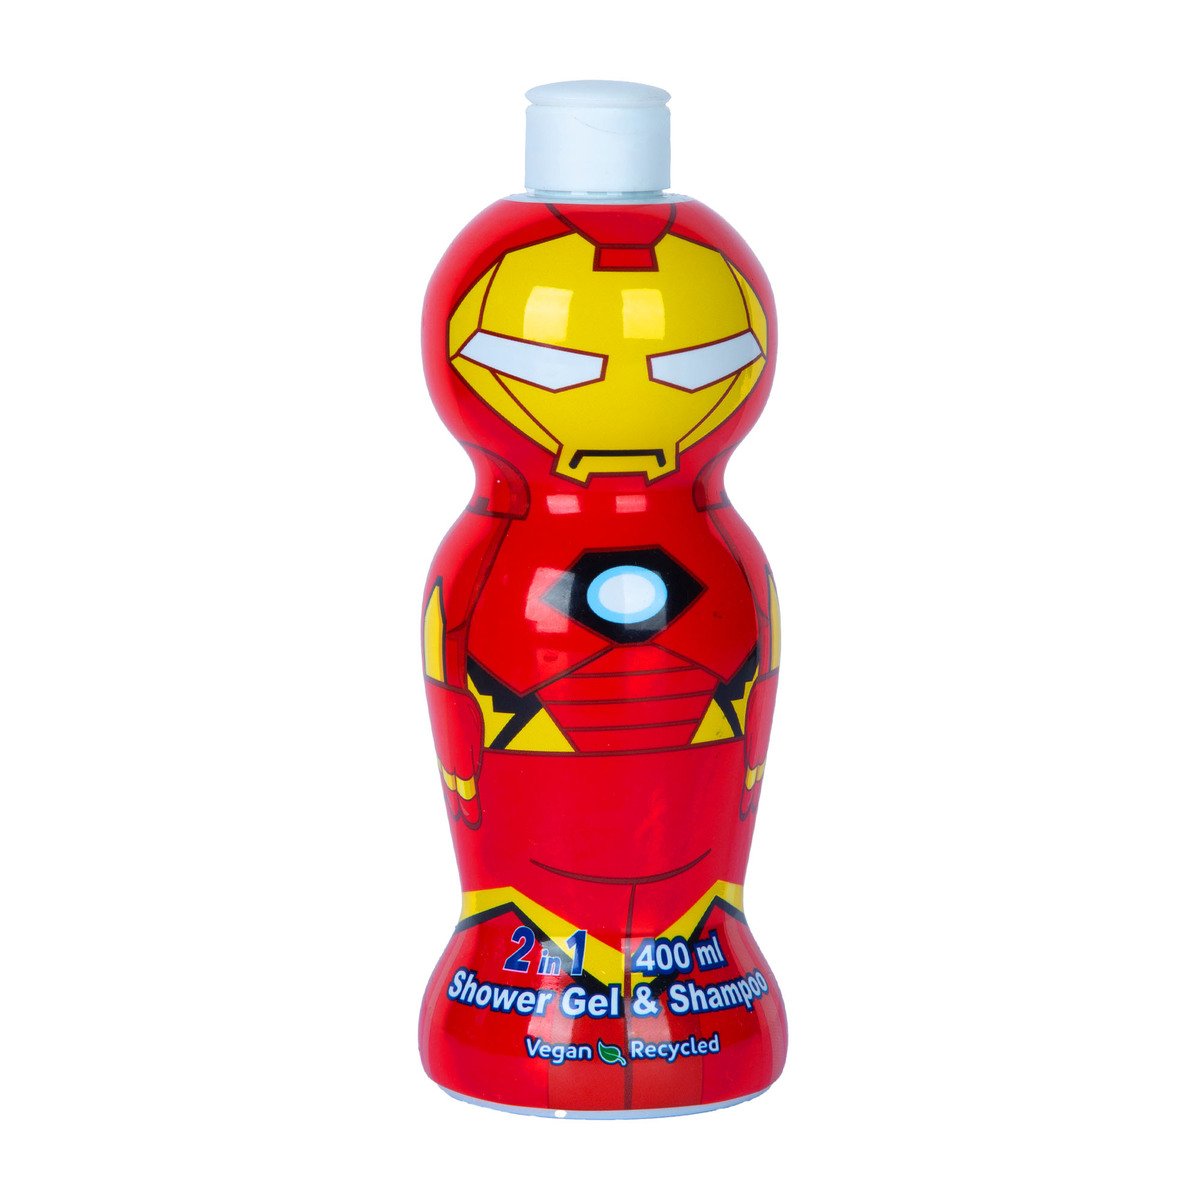 Air-Val Iron Man 2in1 Shower Gel & Shampoo 400 ml